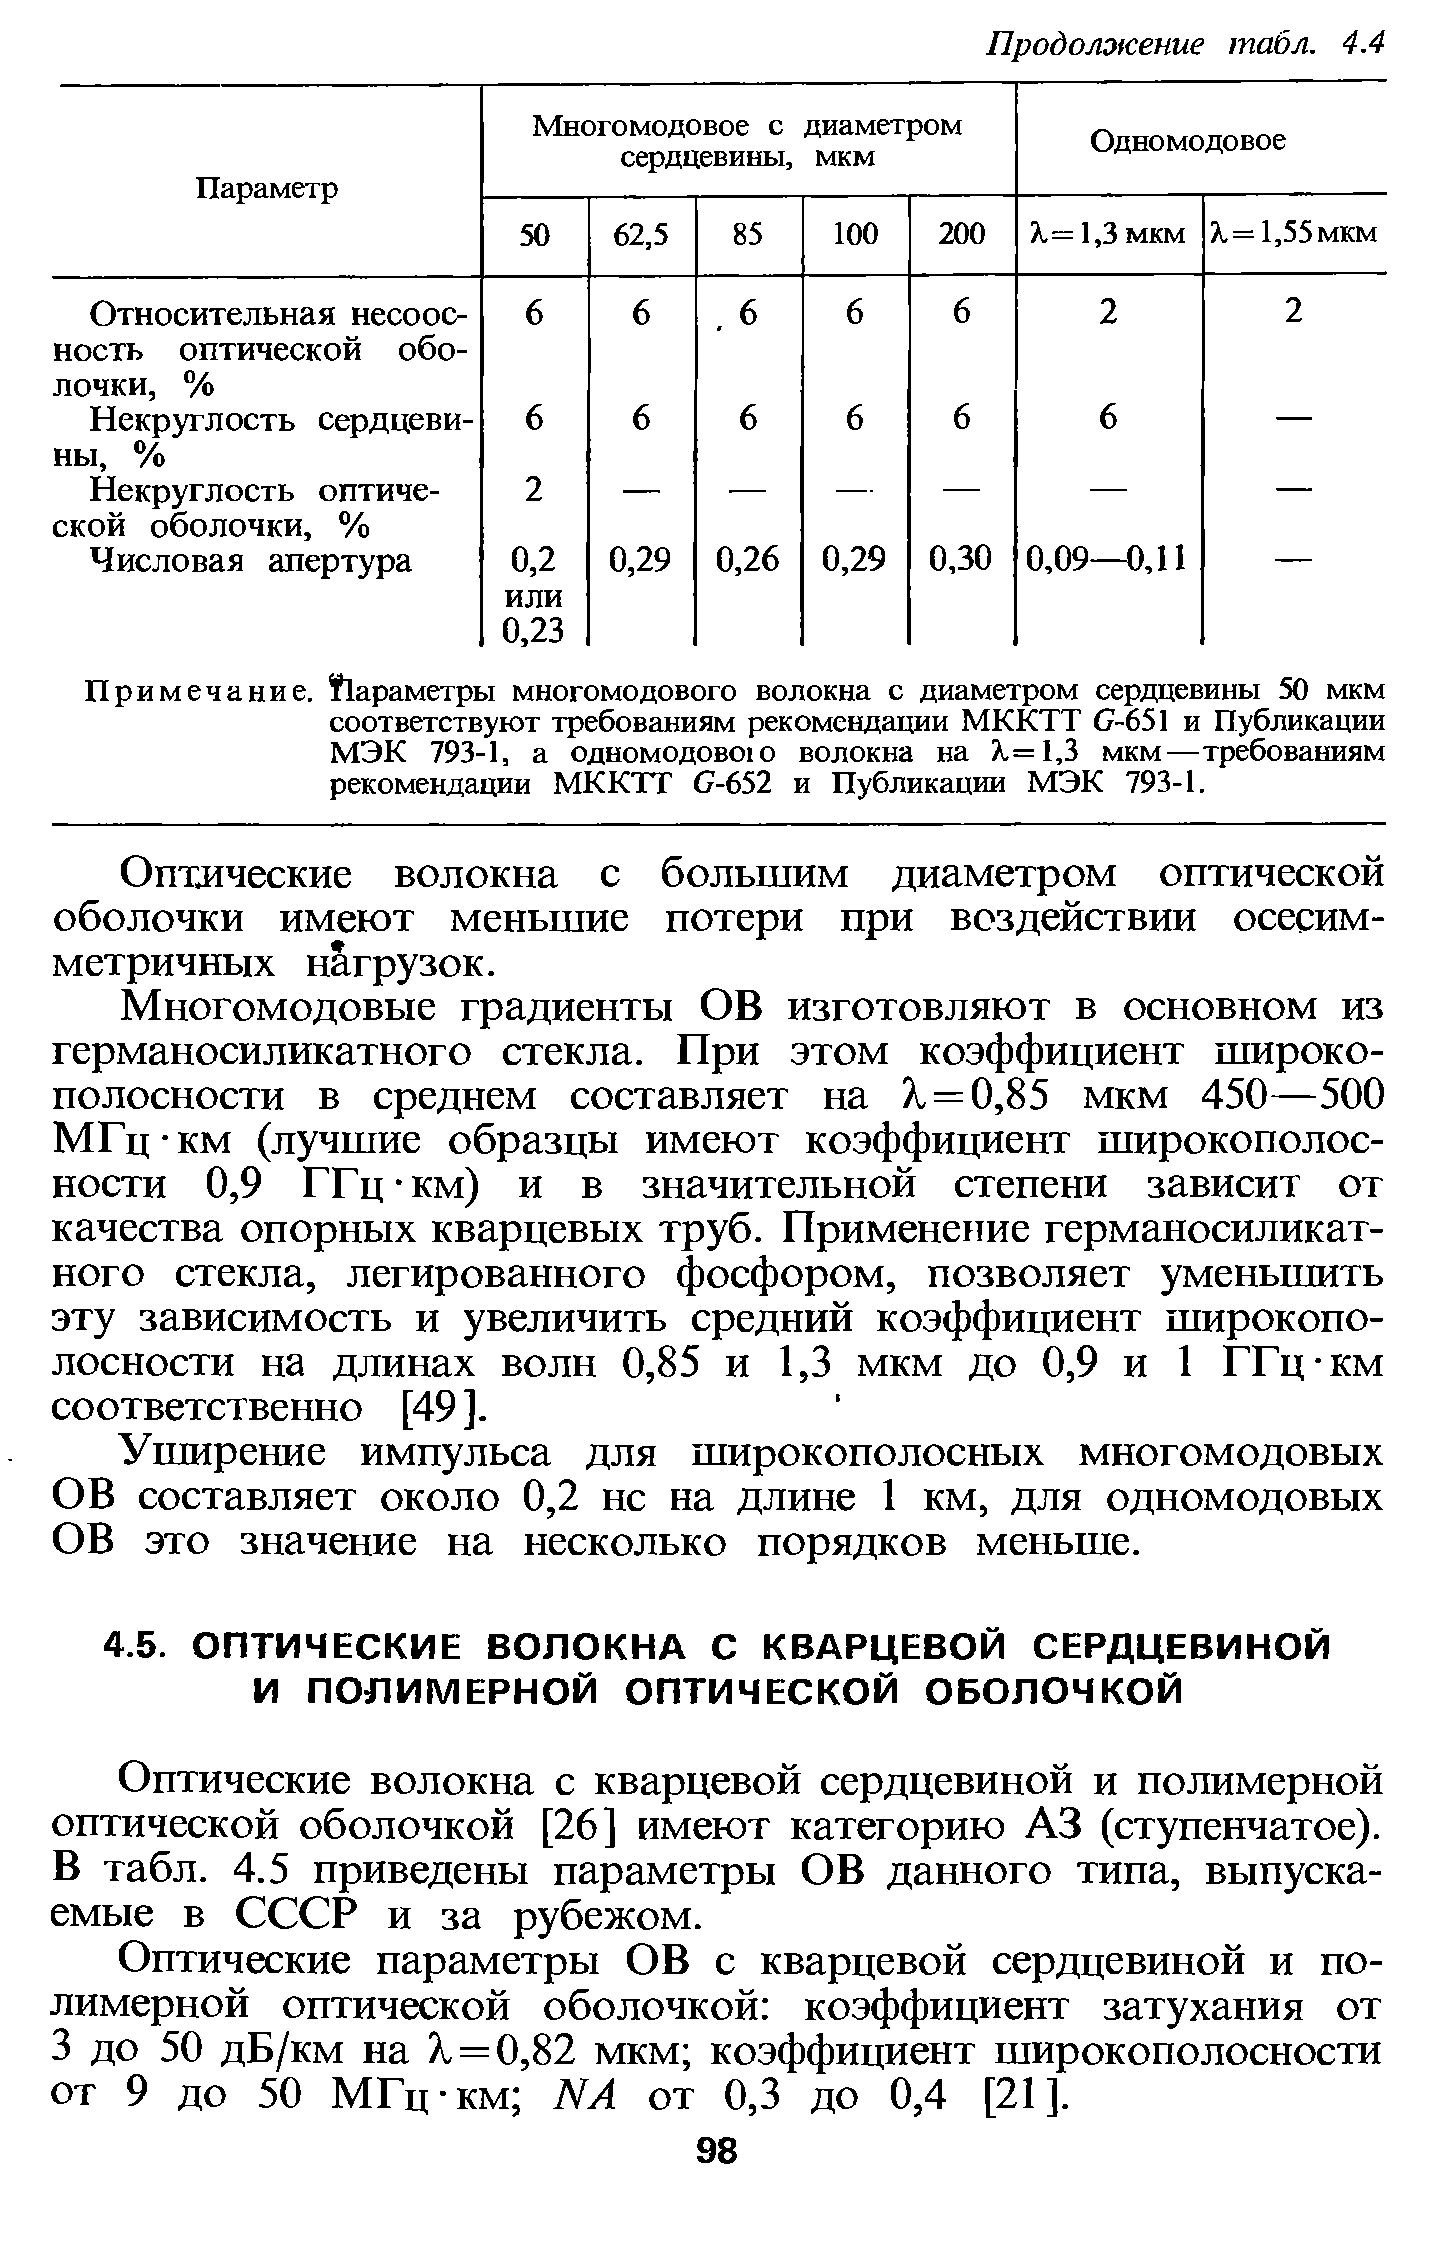 Оптические волокна с кварцевой сердцевиной и полимерной оптической оболочкой [26] имеют категорию АЗ (ступенчатое). В табл. 4.5 приведены параметры ОВ данного типа, выпускаемые в СССР и за рубежом.